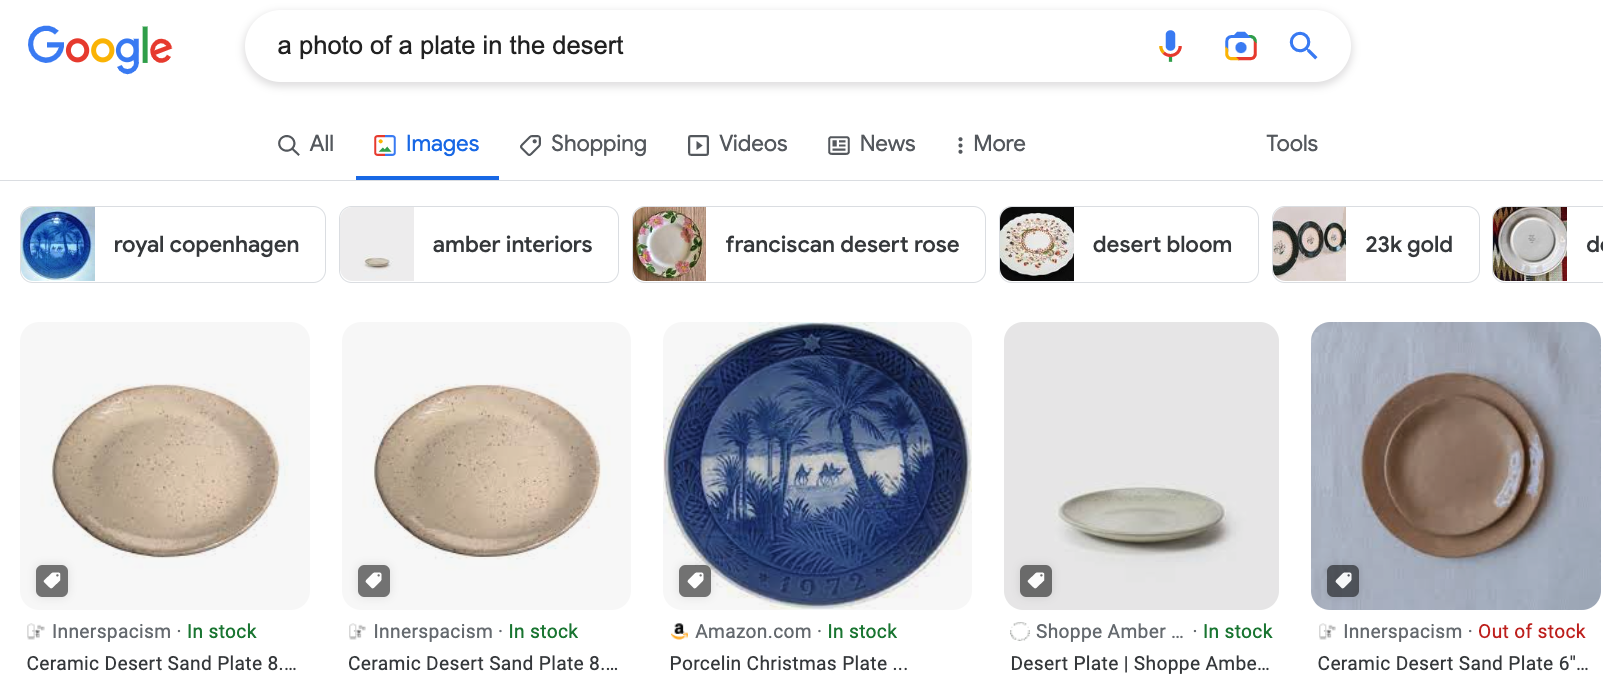 plates in the desert